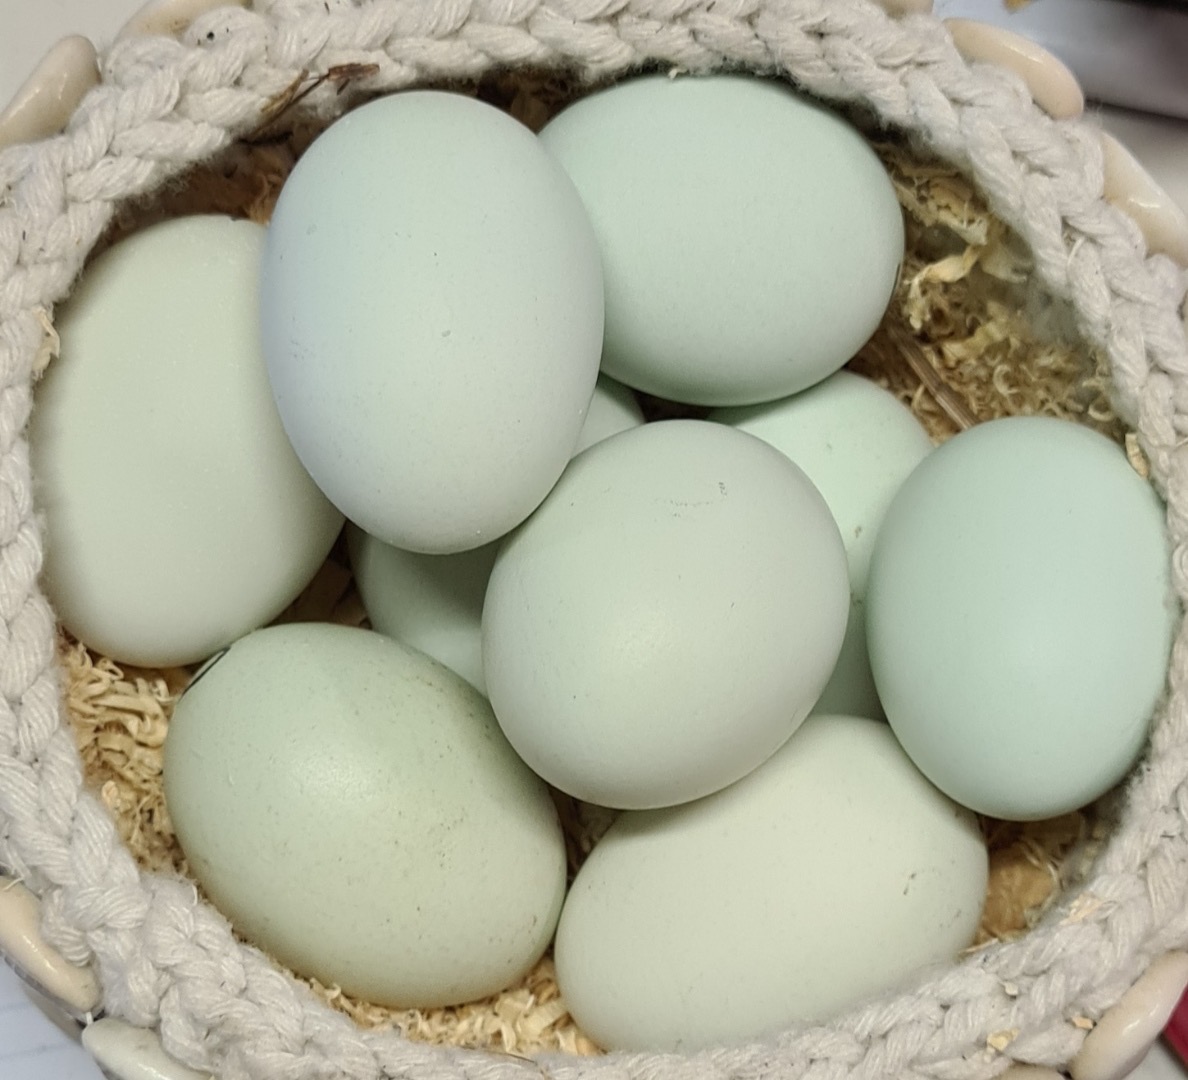 araucana eggs